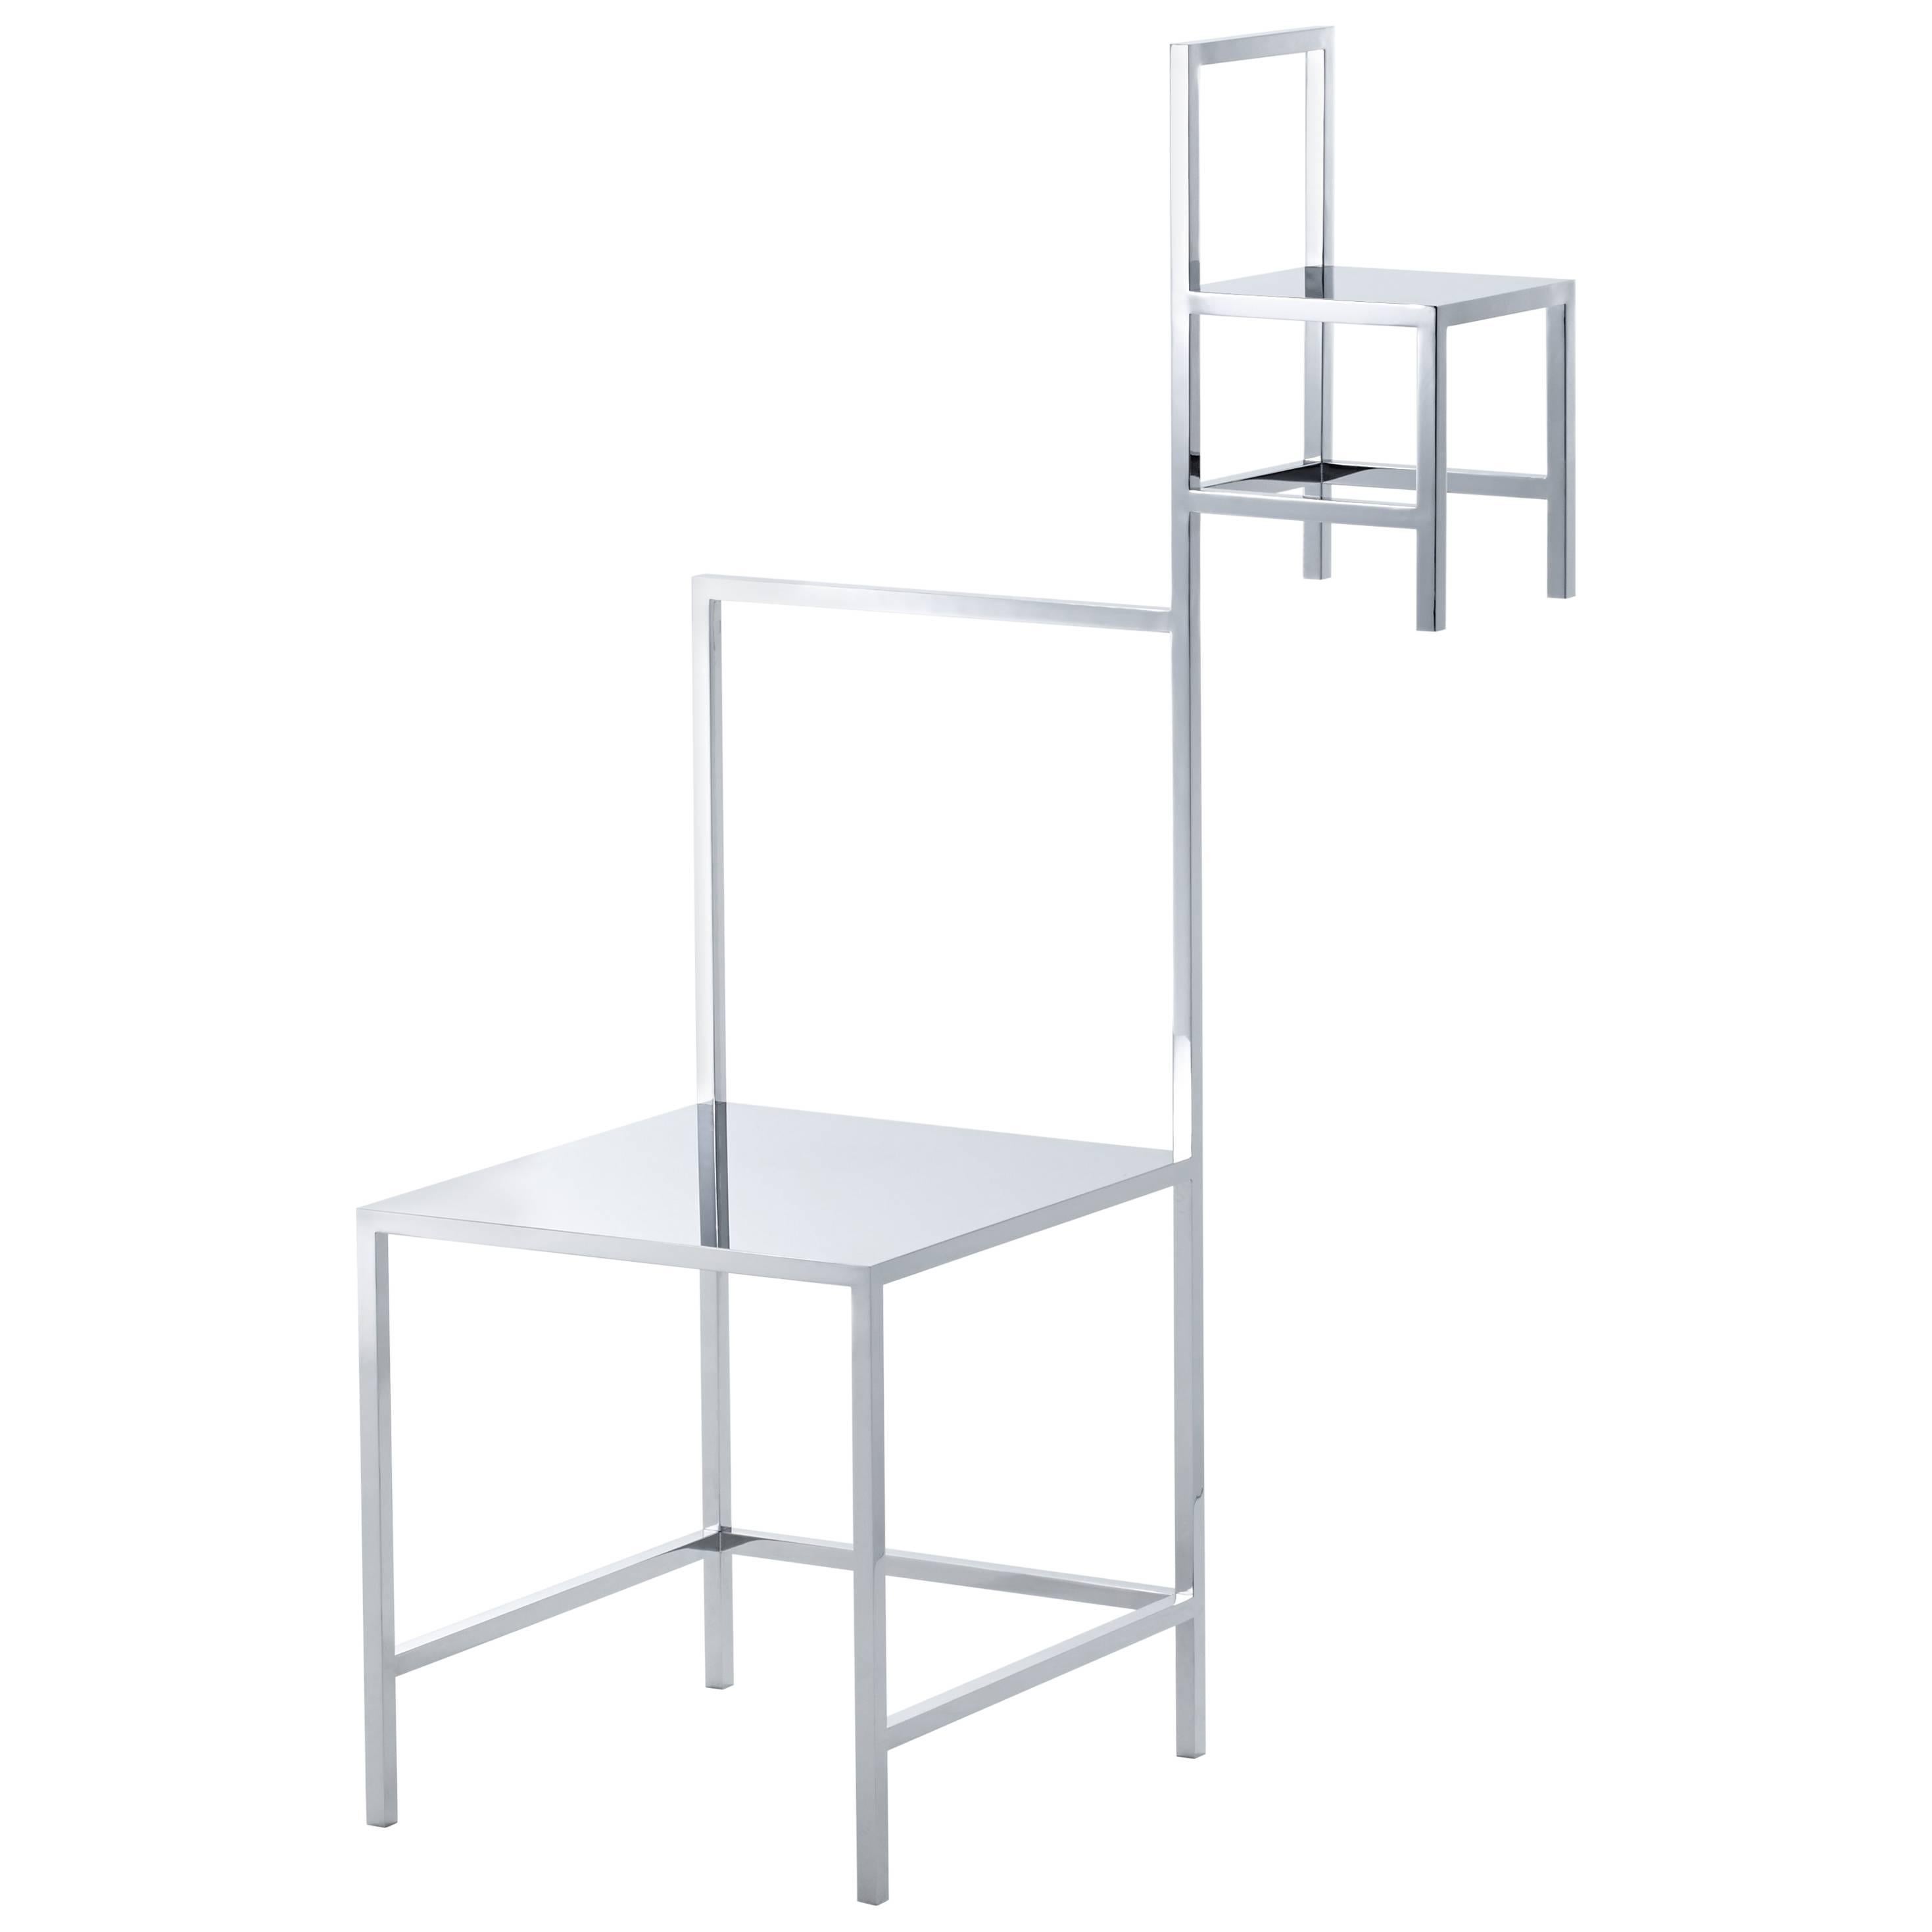 nendo, "Manga Chair (14)", Stainless Steel, Mirror